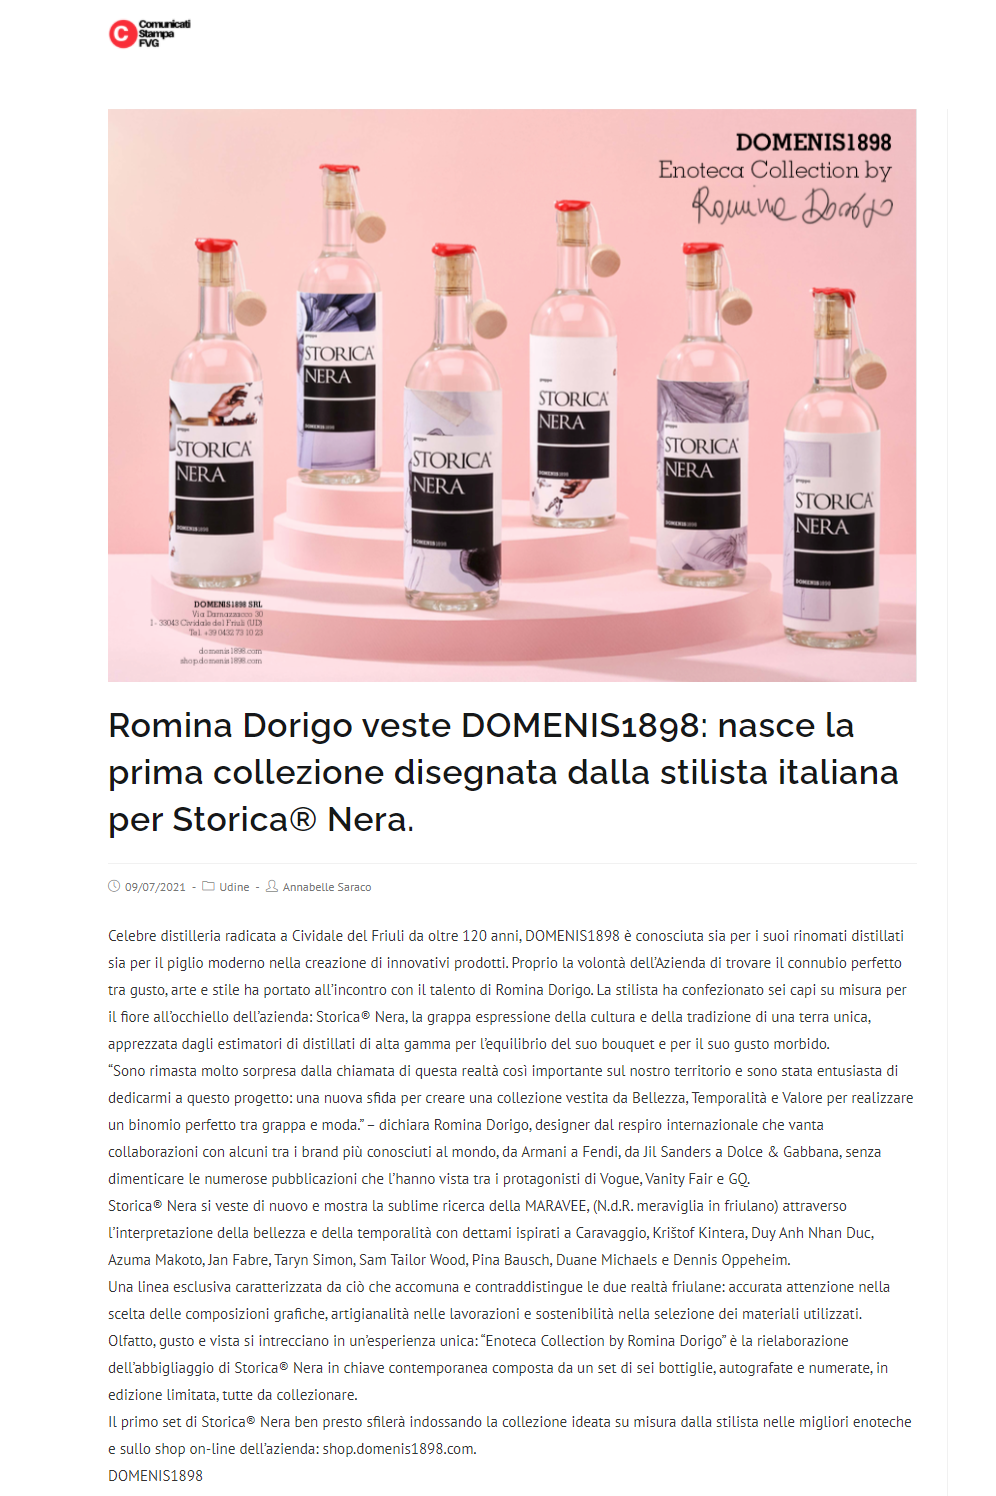 2021 luglio 09: Comunicati-stampa.fvg.it – Romina Dorigo veste DOMENIS1898: nasce la prima collezione disegnata dalla stilista italiana per Storica® Nera.